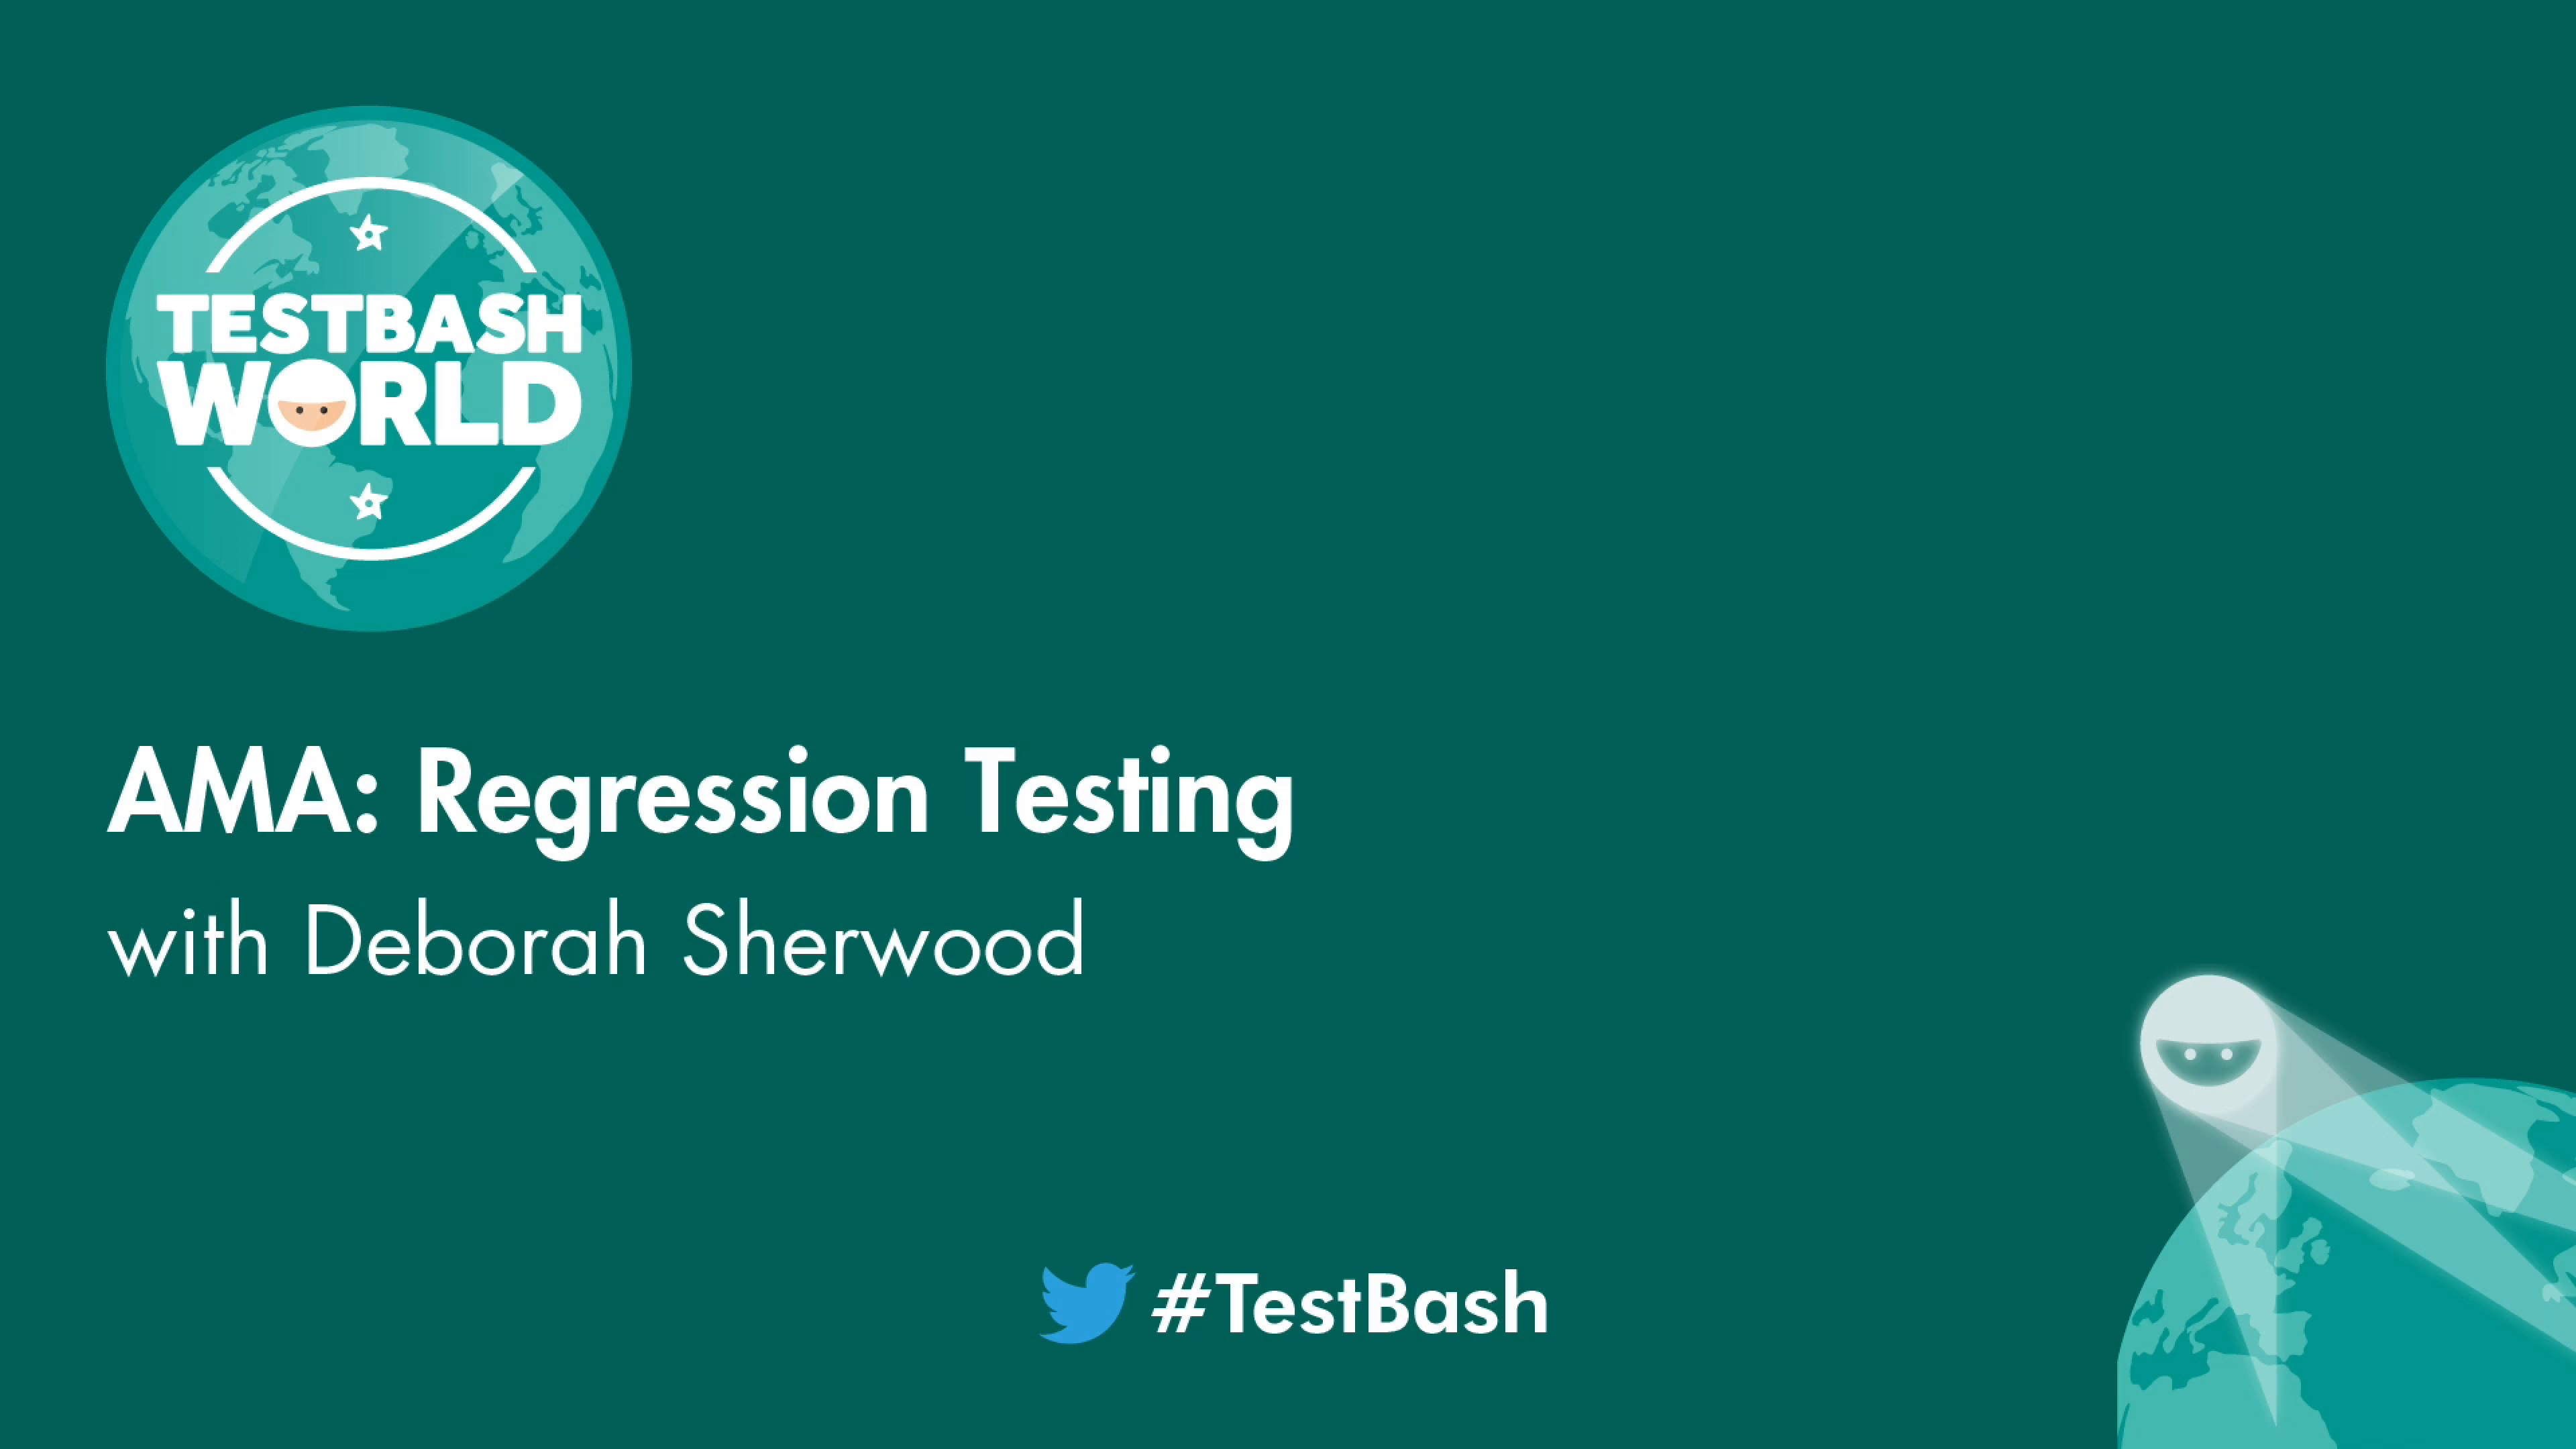 Ask Me Anything About Regression Testing - Deborah Sherwood